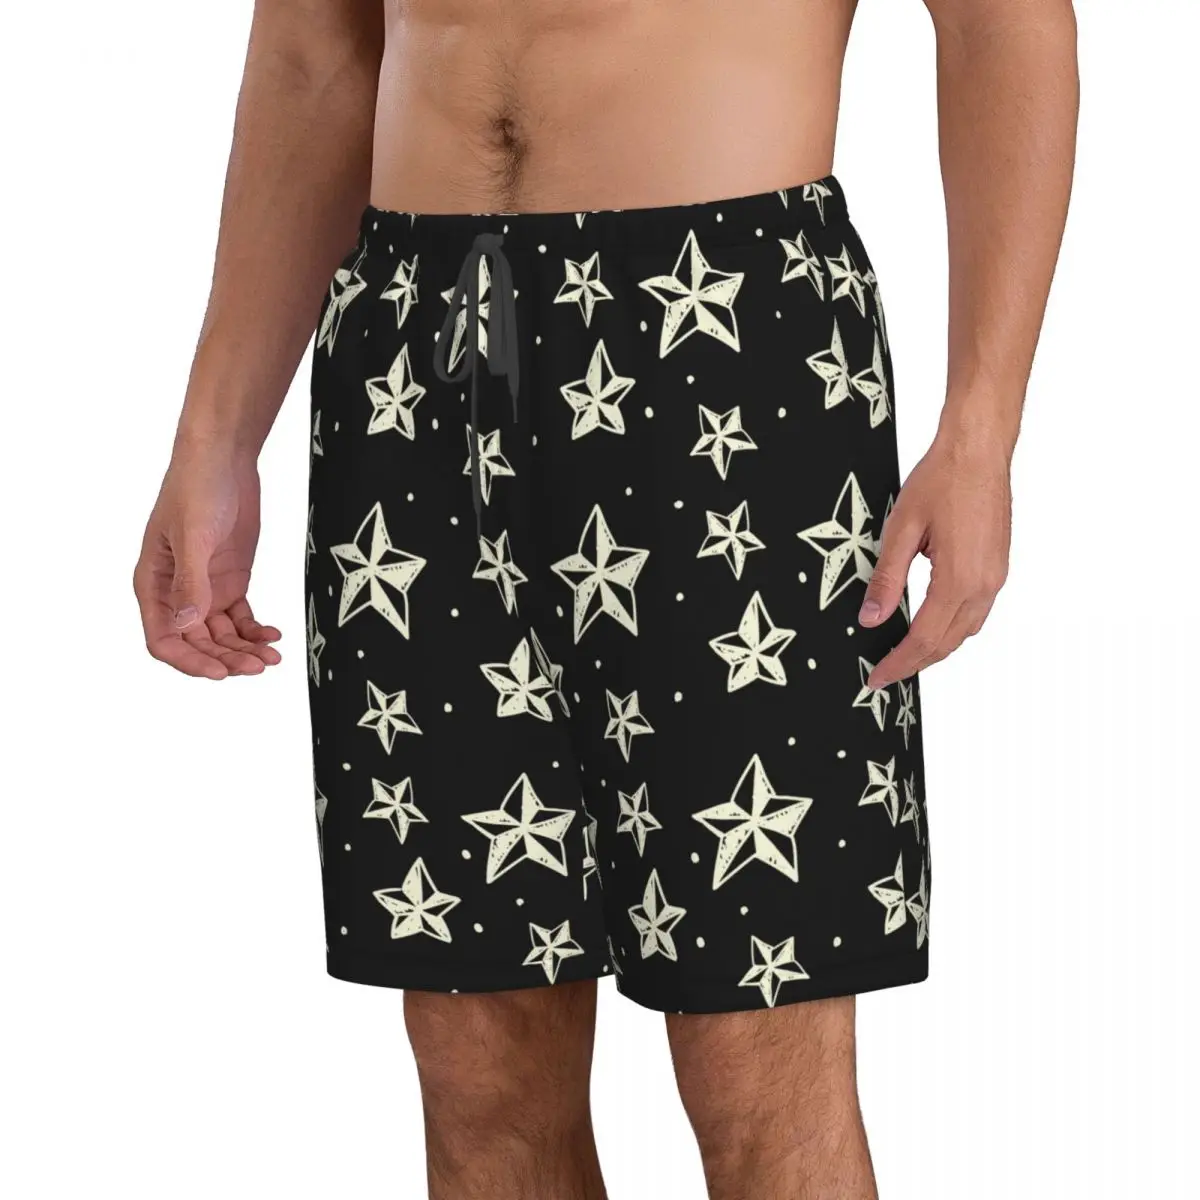 Купальники Мужские плавательные шорты Пляжные плавки для мужчин Геометрические звезды Купальник Доска для серфинга Купальный костюм